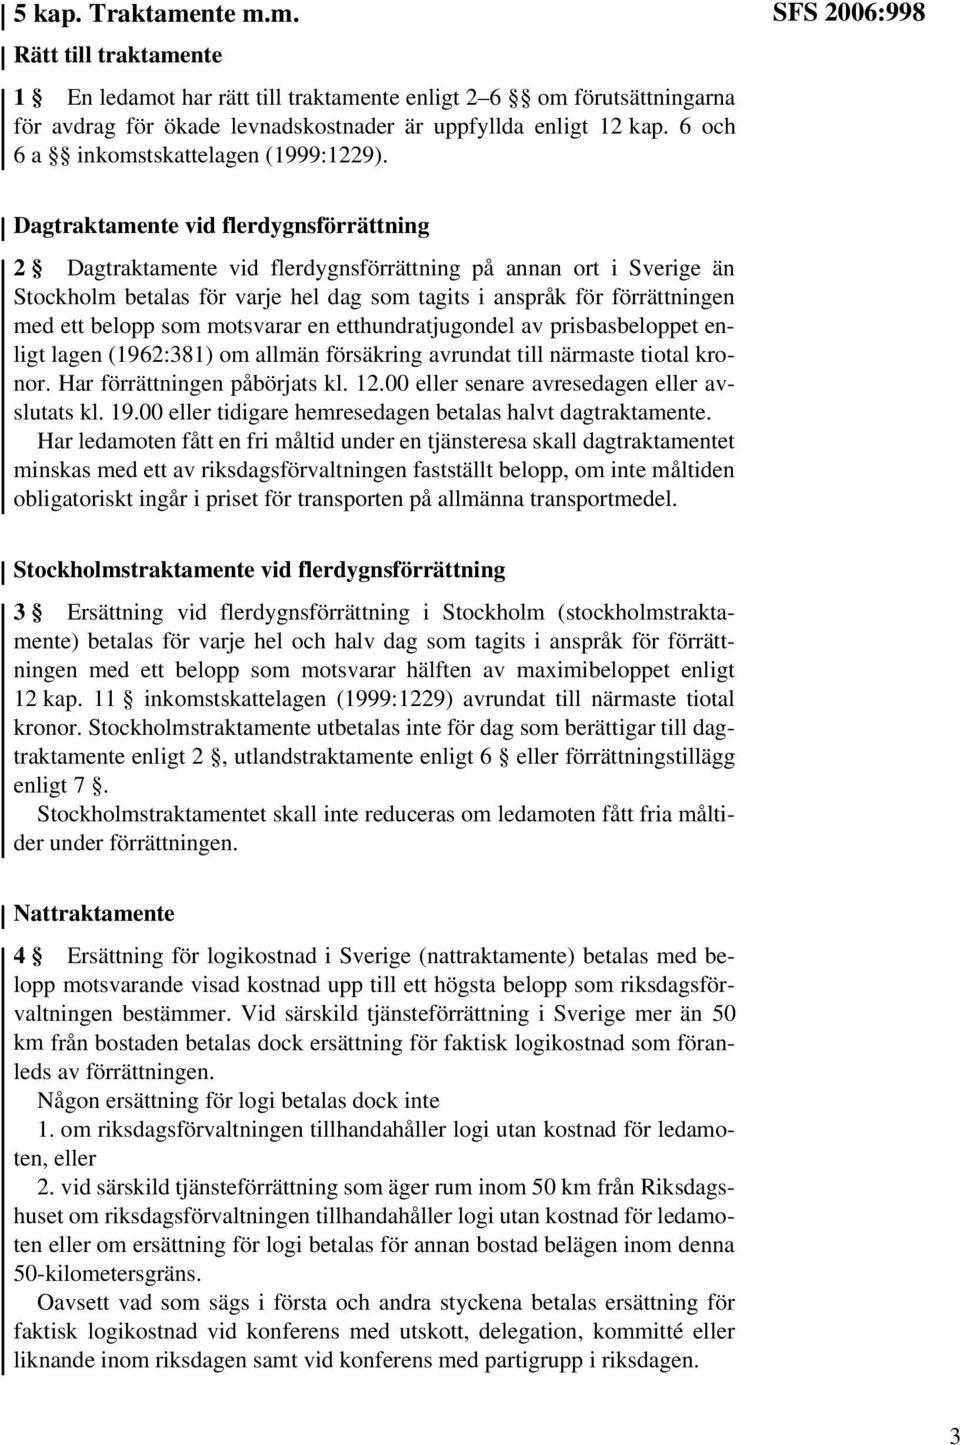 SFS 2006:998 Dagtraktamente vid flerdygnsförrättning 2 Dagtraktamente vid flerdygnsförrättning på annan ort i Sverige än Stockholm betalas för varje hel dag som tagits i anspråk för förrättningen med